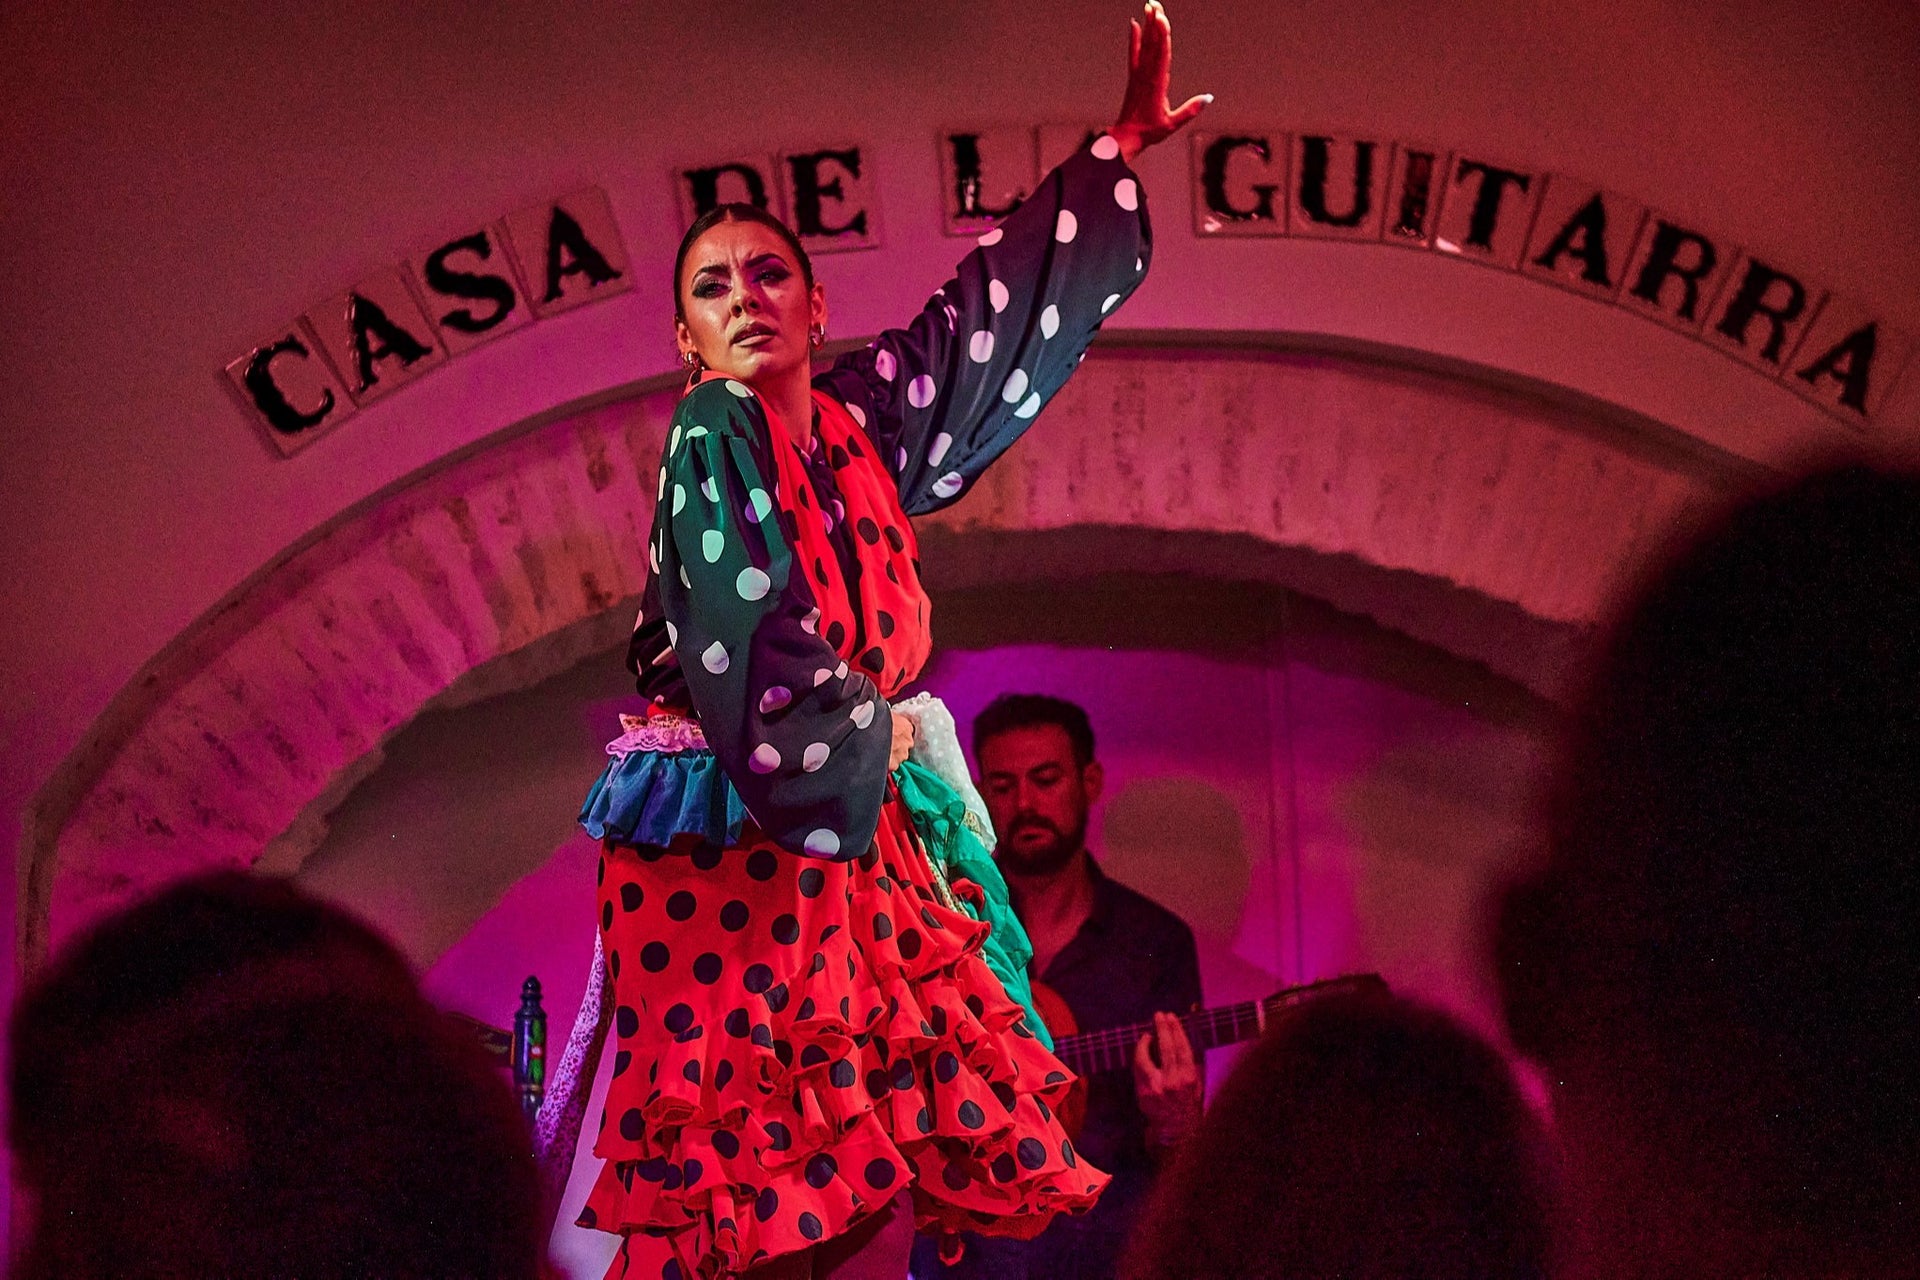 Spectacle de flamenco à la Casa de la Guitarra